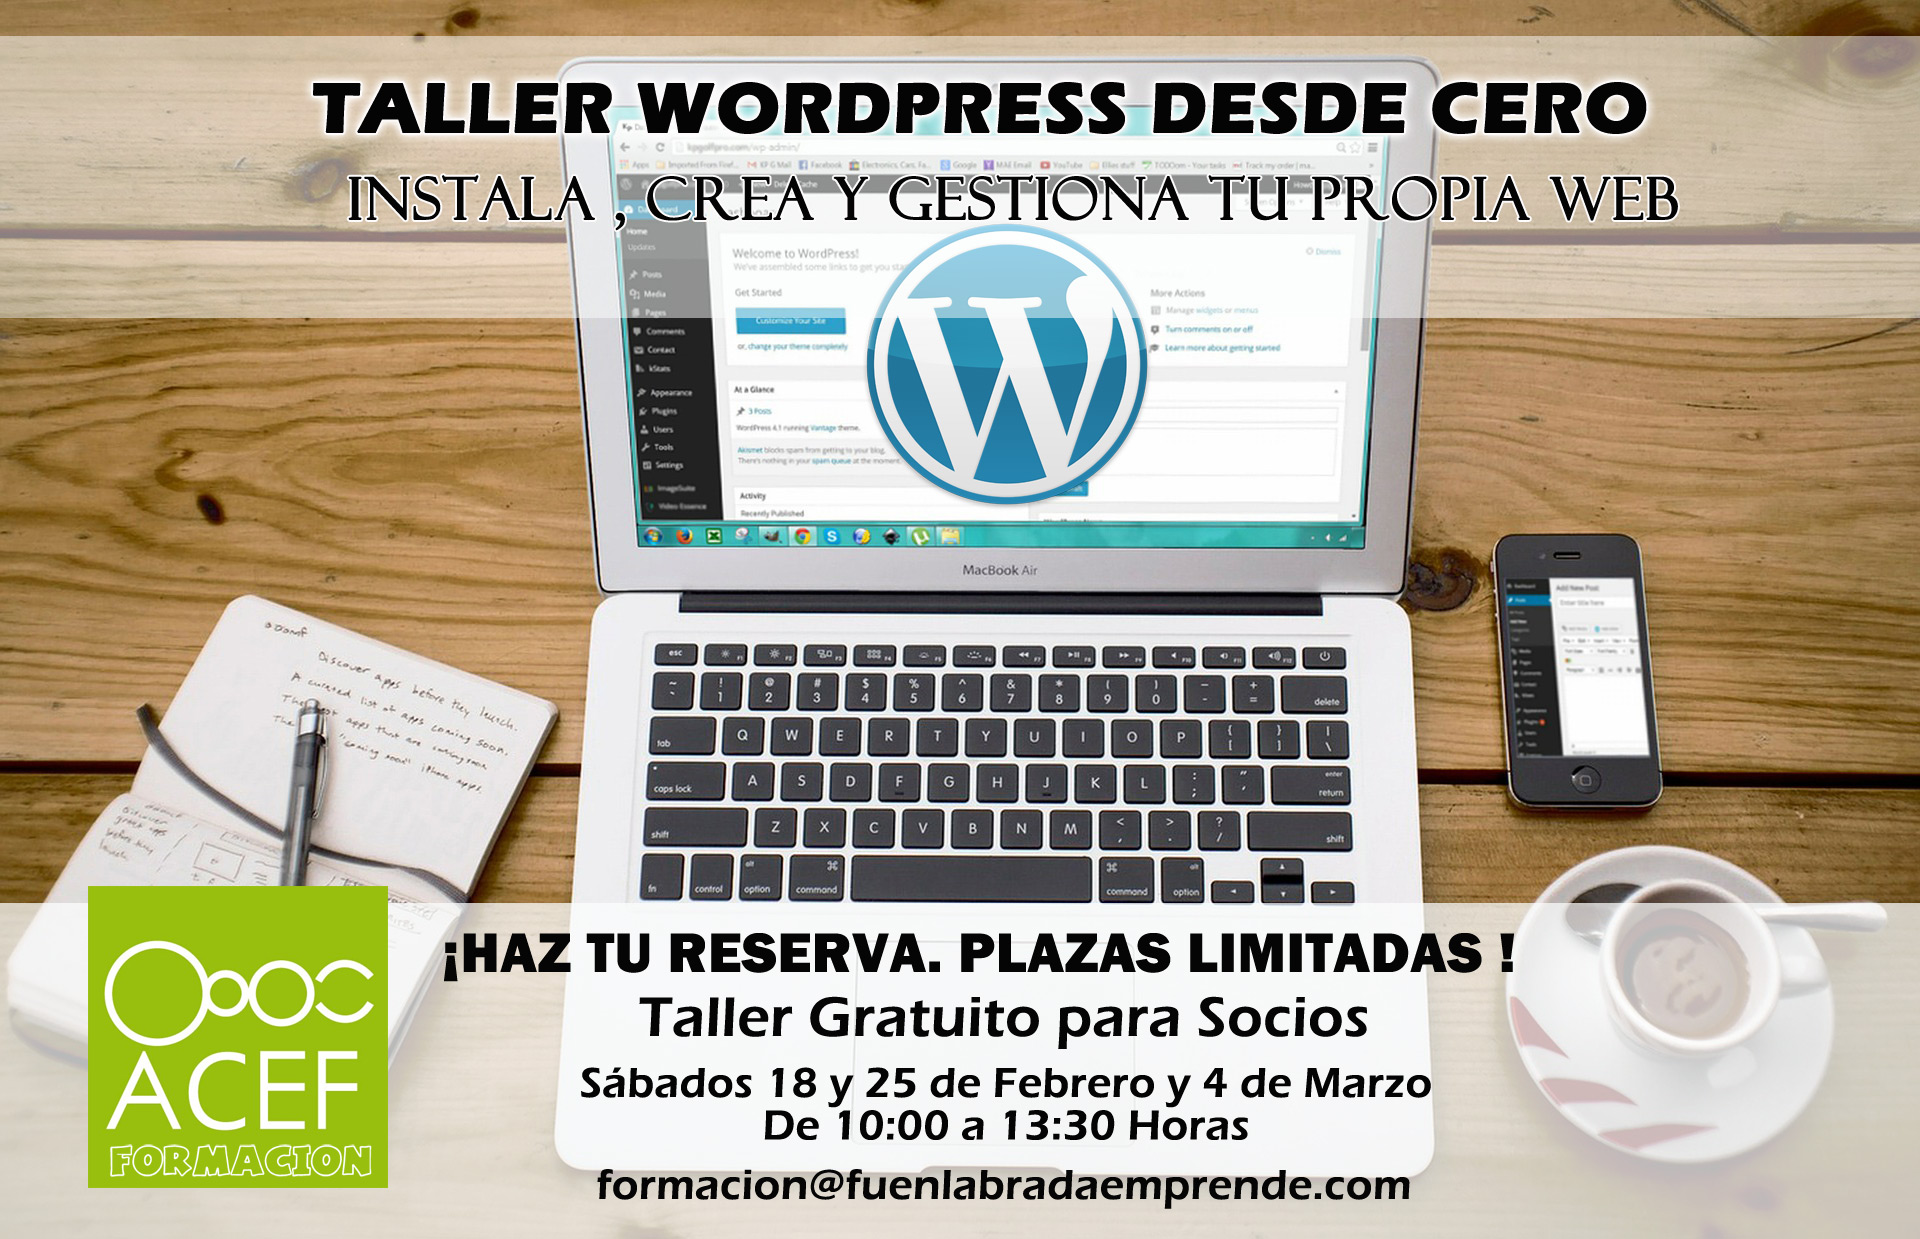 Taller gratuito WordPress desde Cero - ACEF